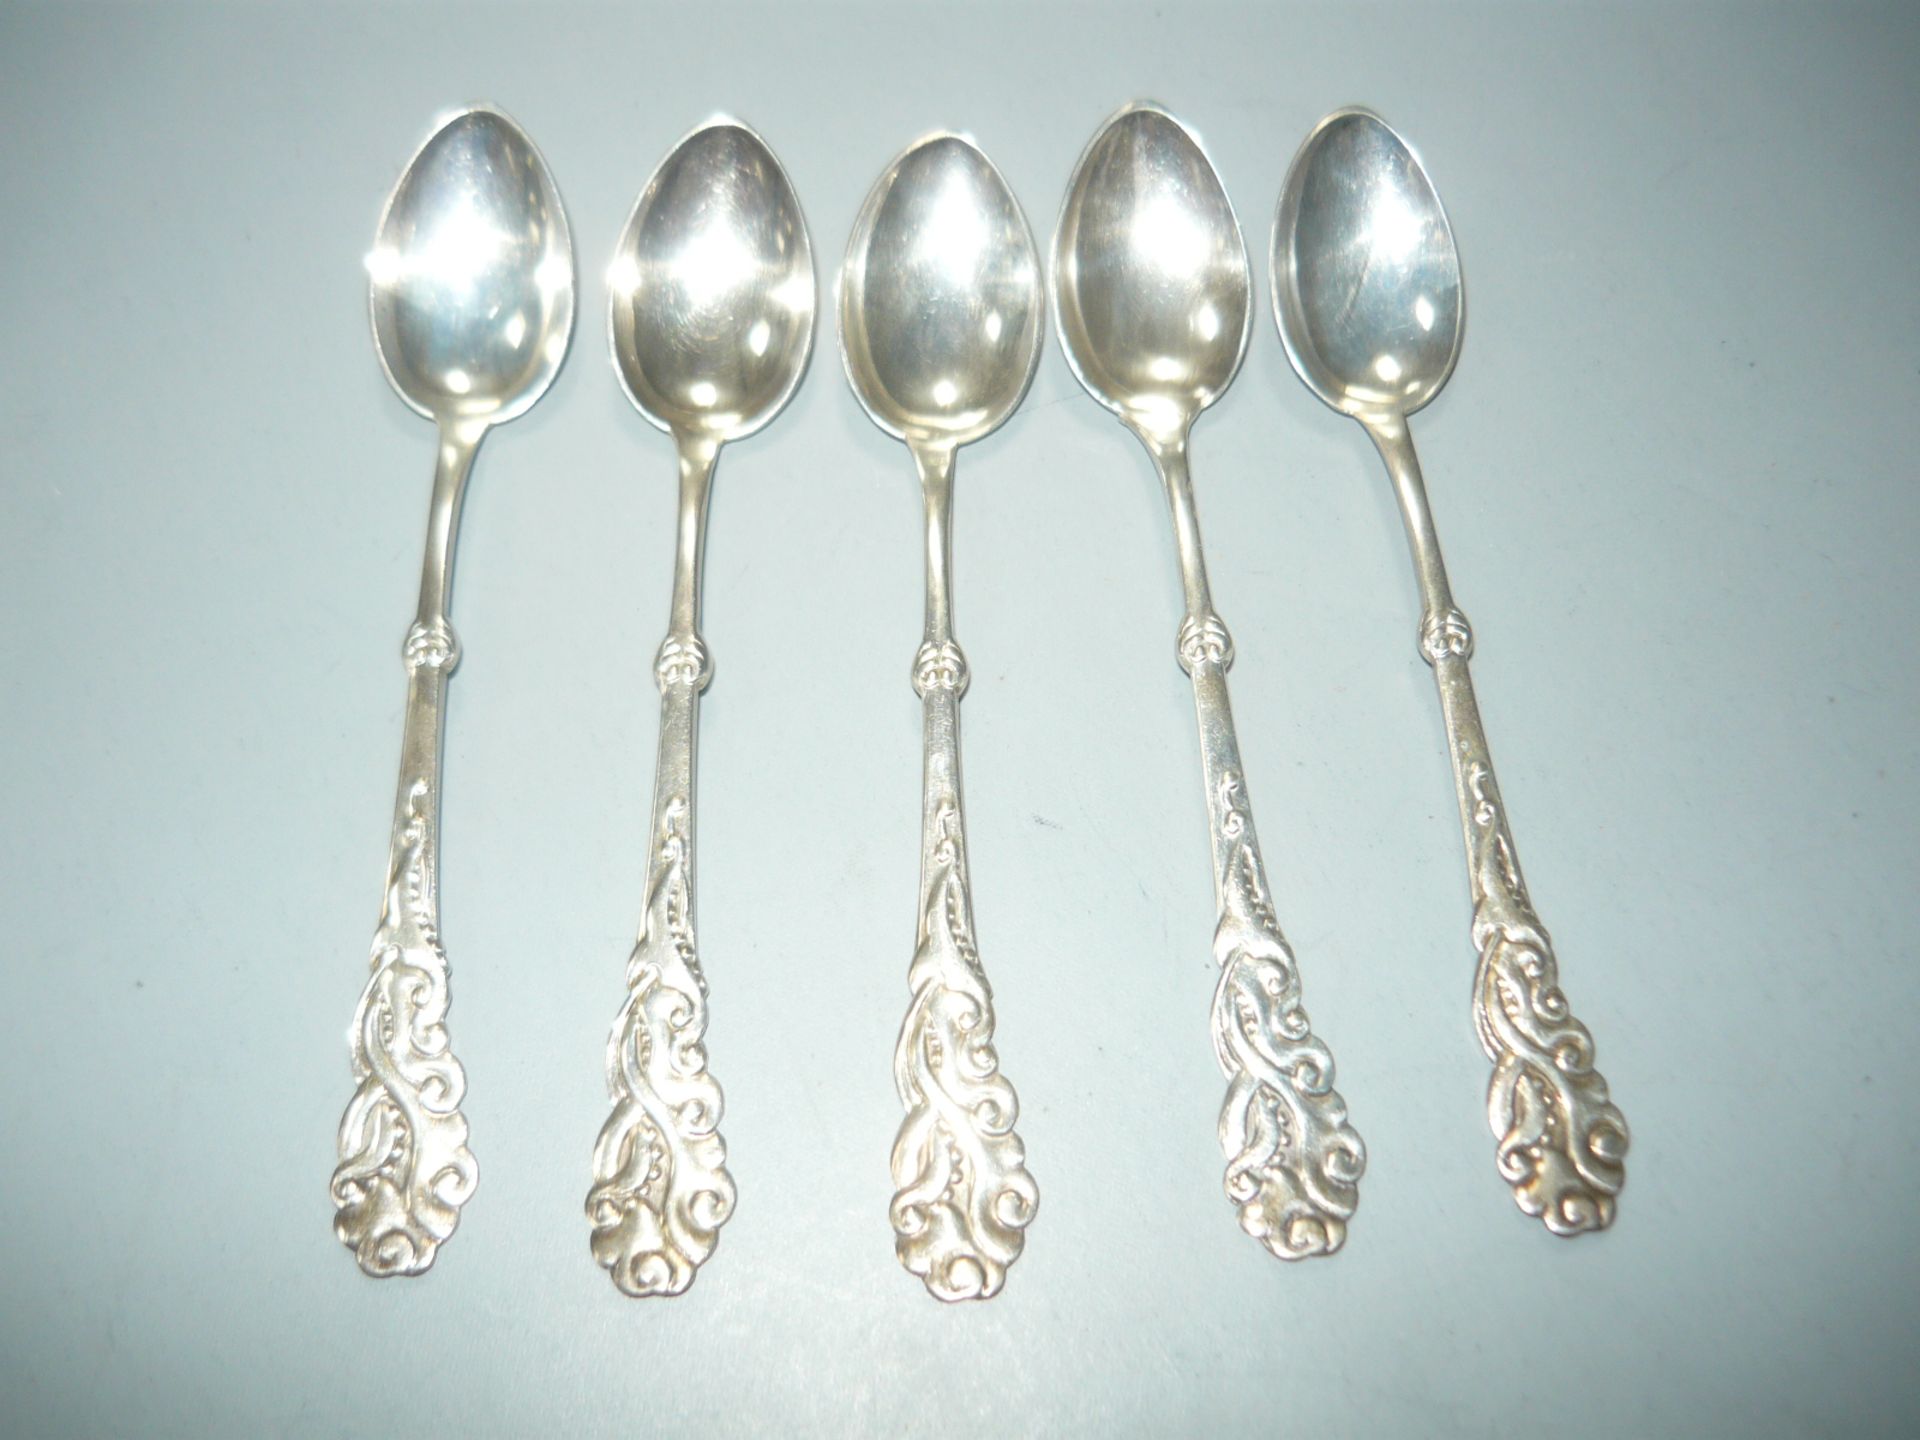 Satz von 5 dänischen Silberlöffeln. 830er Silber. English: Set of 5 danish spoons in 830 silver.